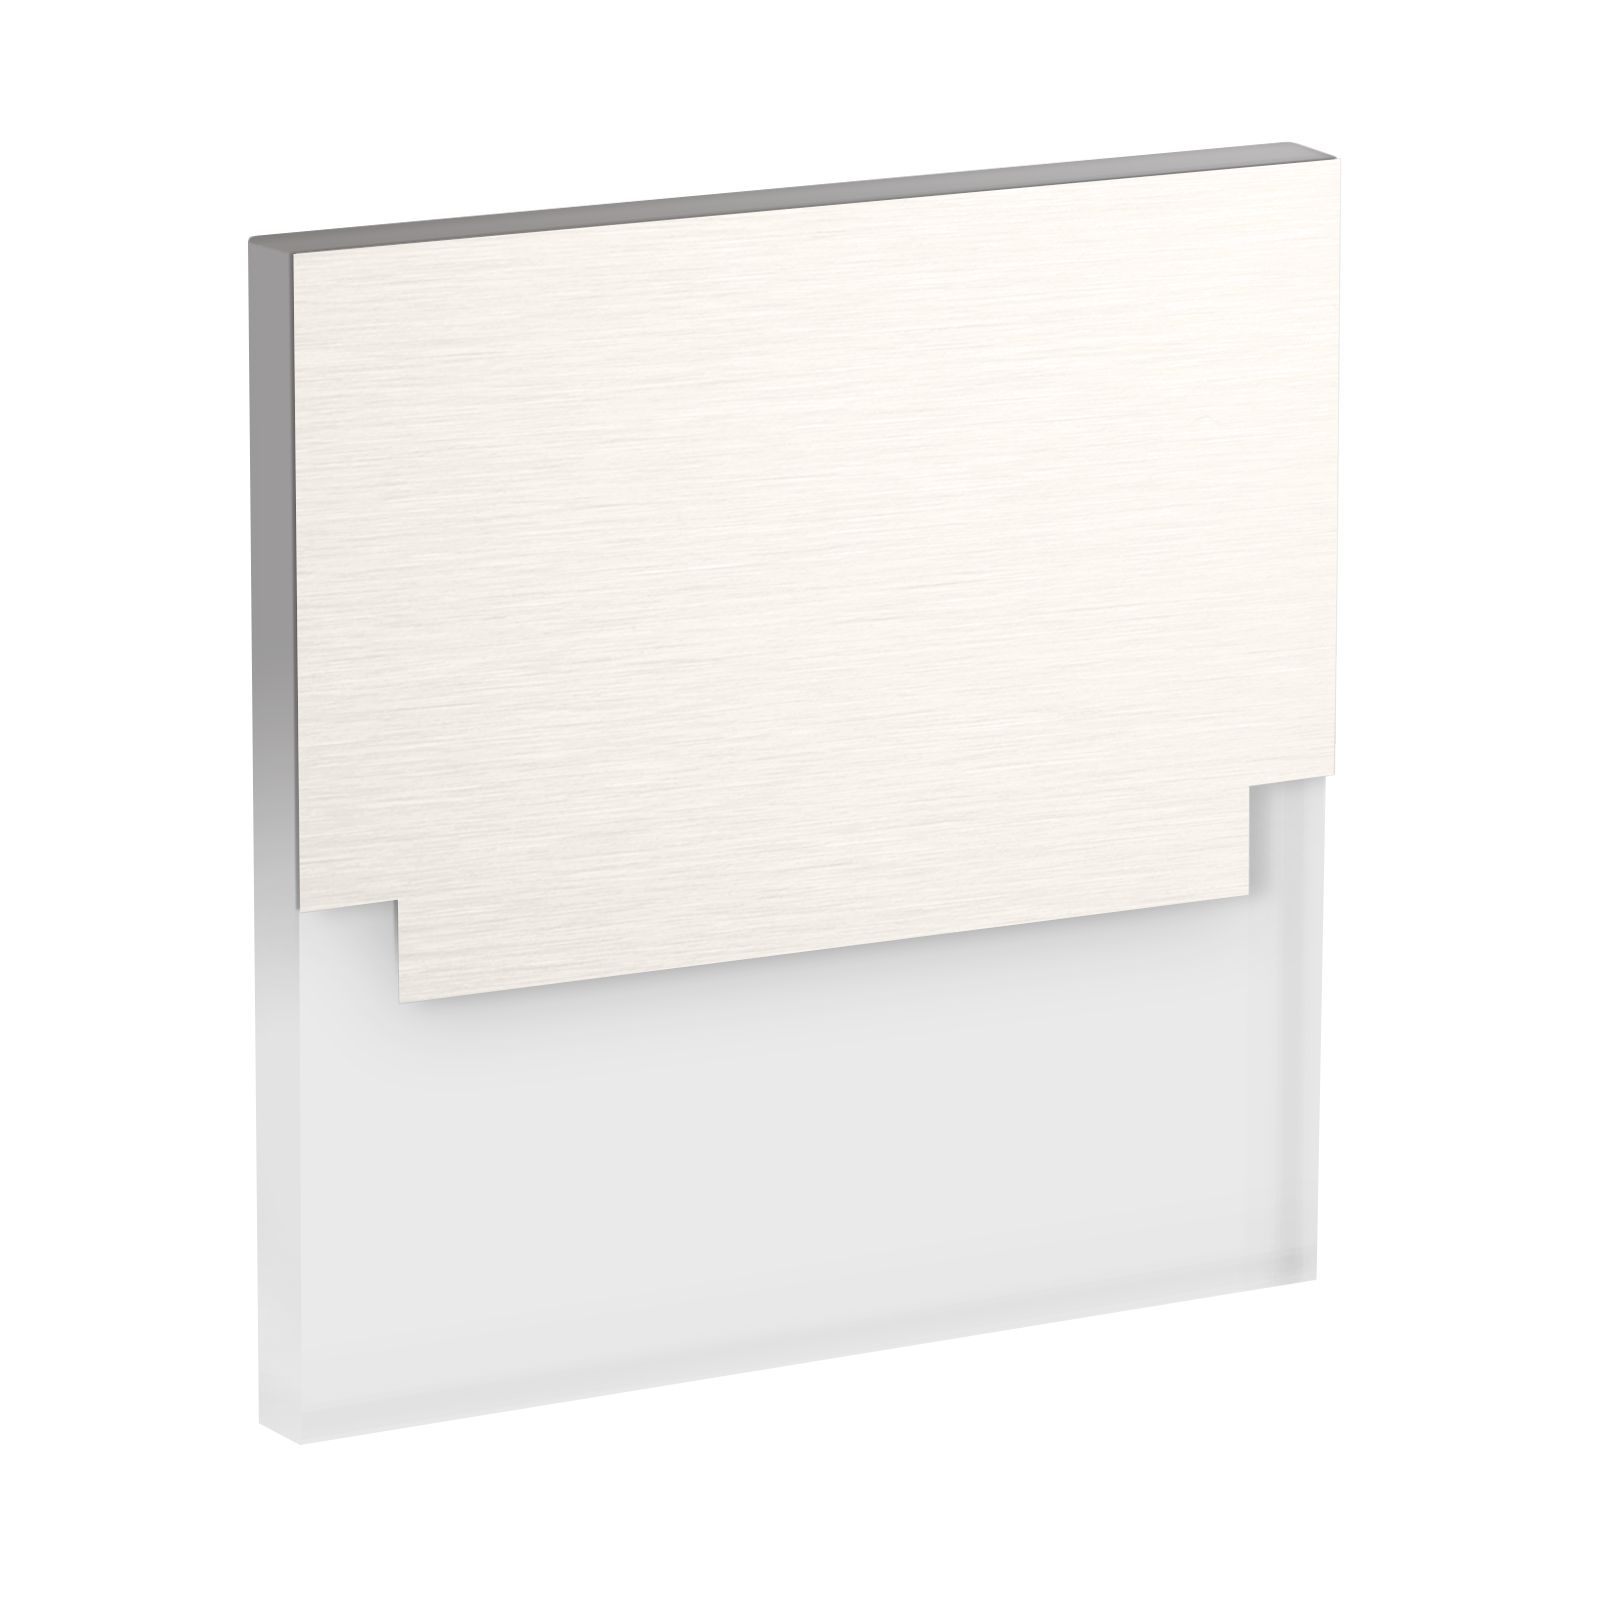 LED Wandeinbaustrahler Treppenlicht Wandeinbauleuchte warmweiß flach Satinglas quadratisch WB3 12V